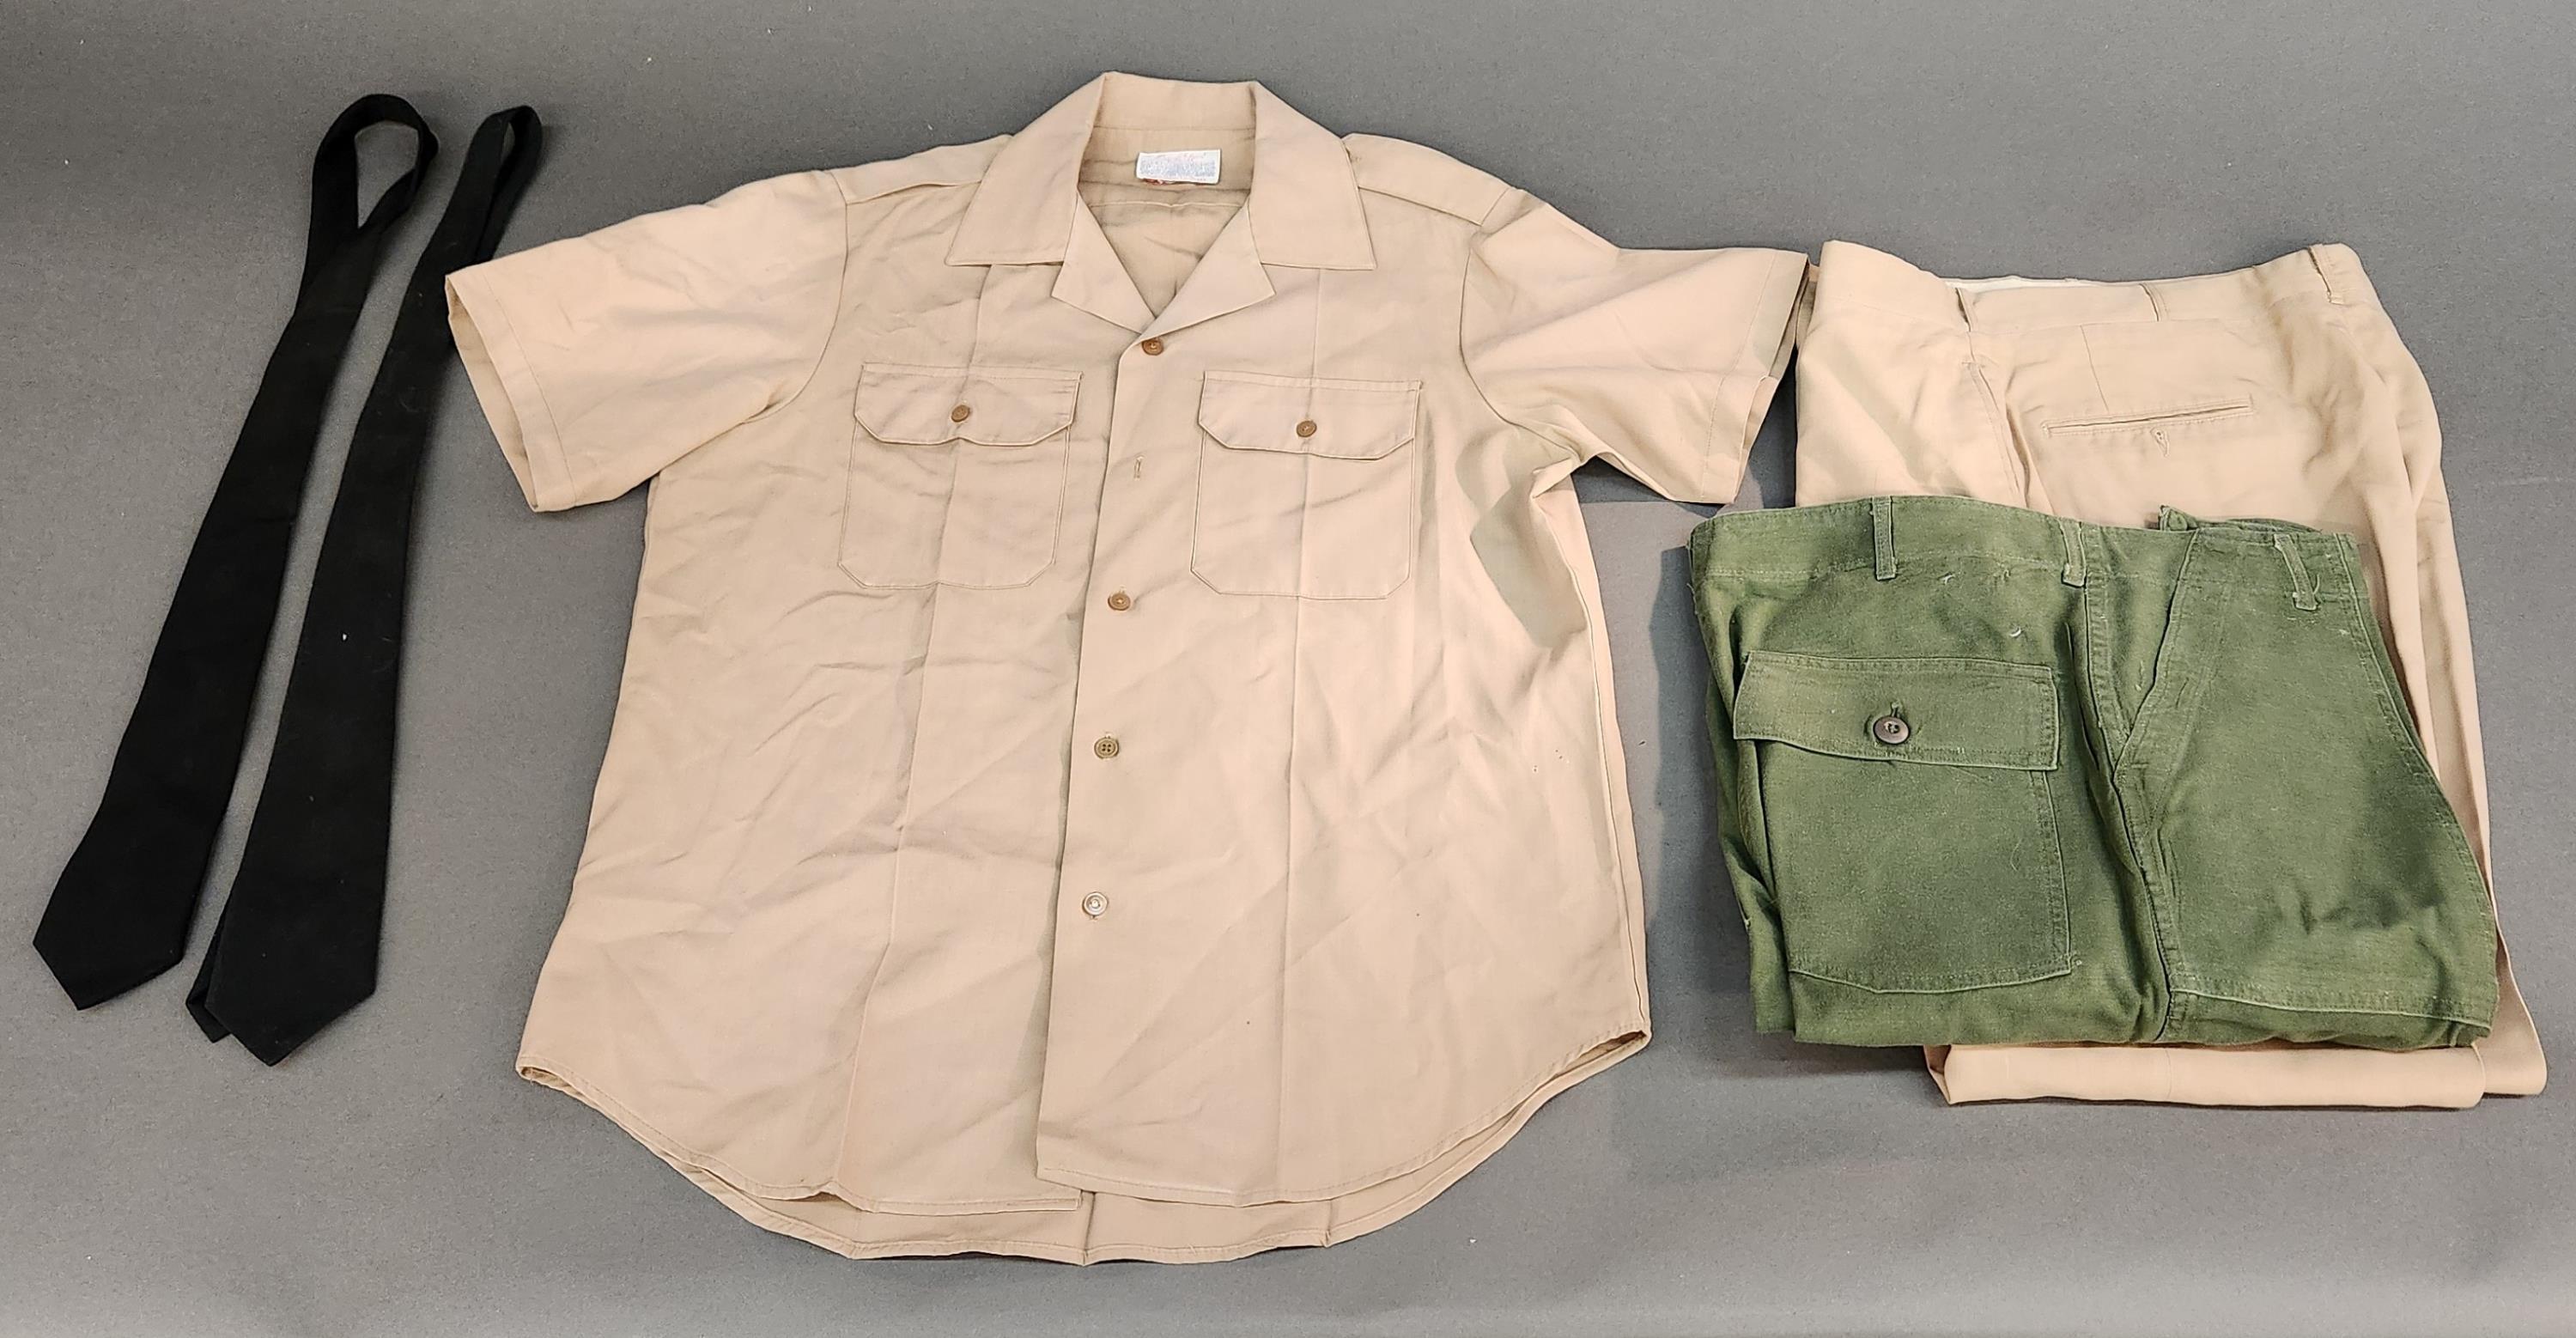 Vietnam Era U.S. Army uniforms